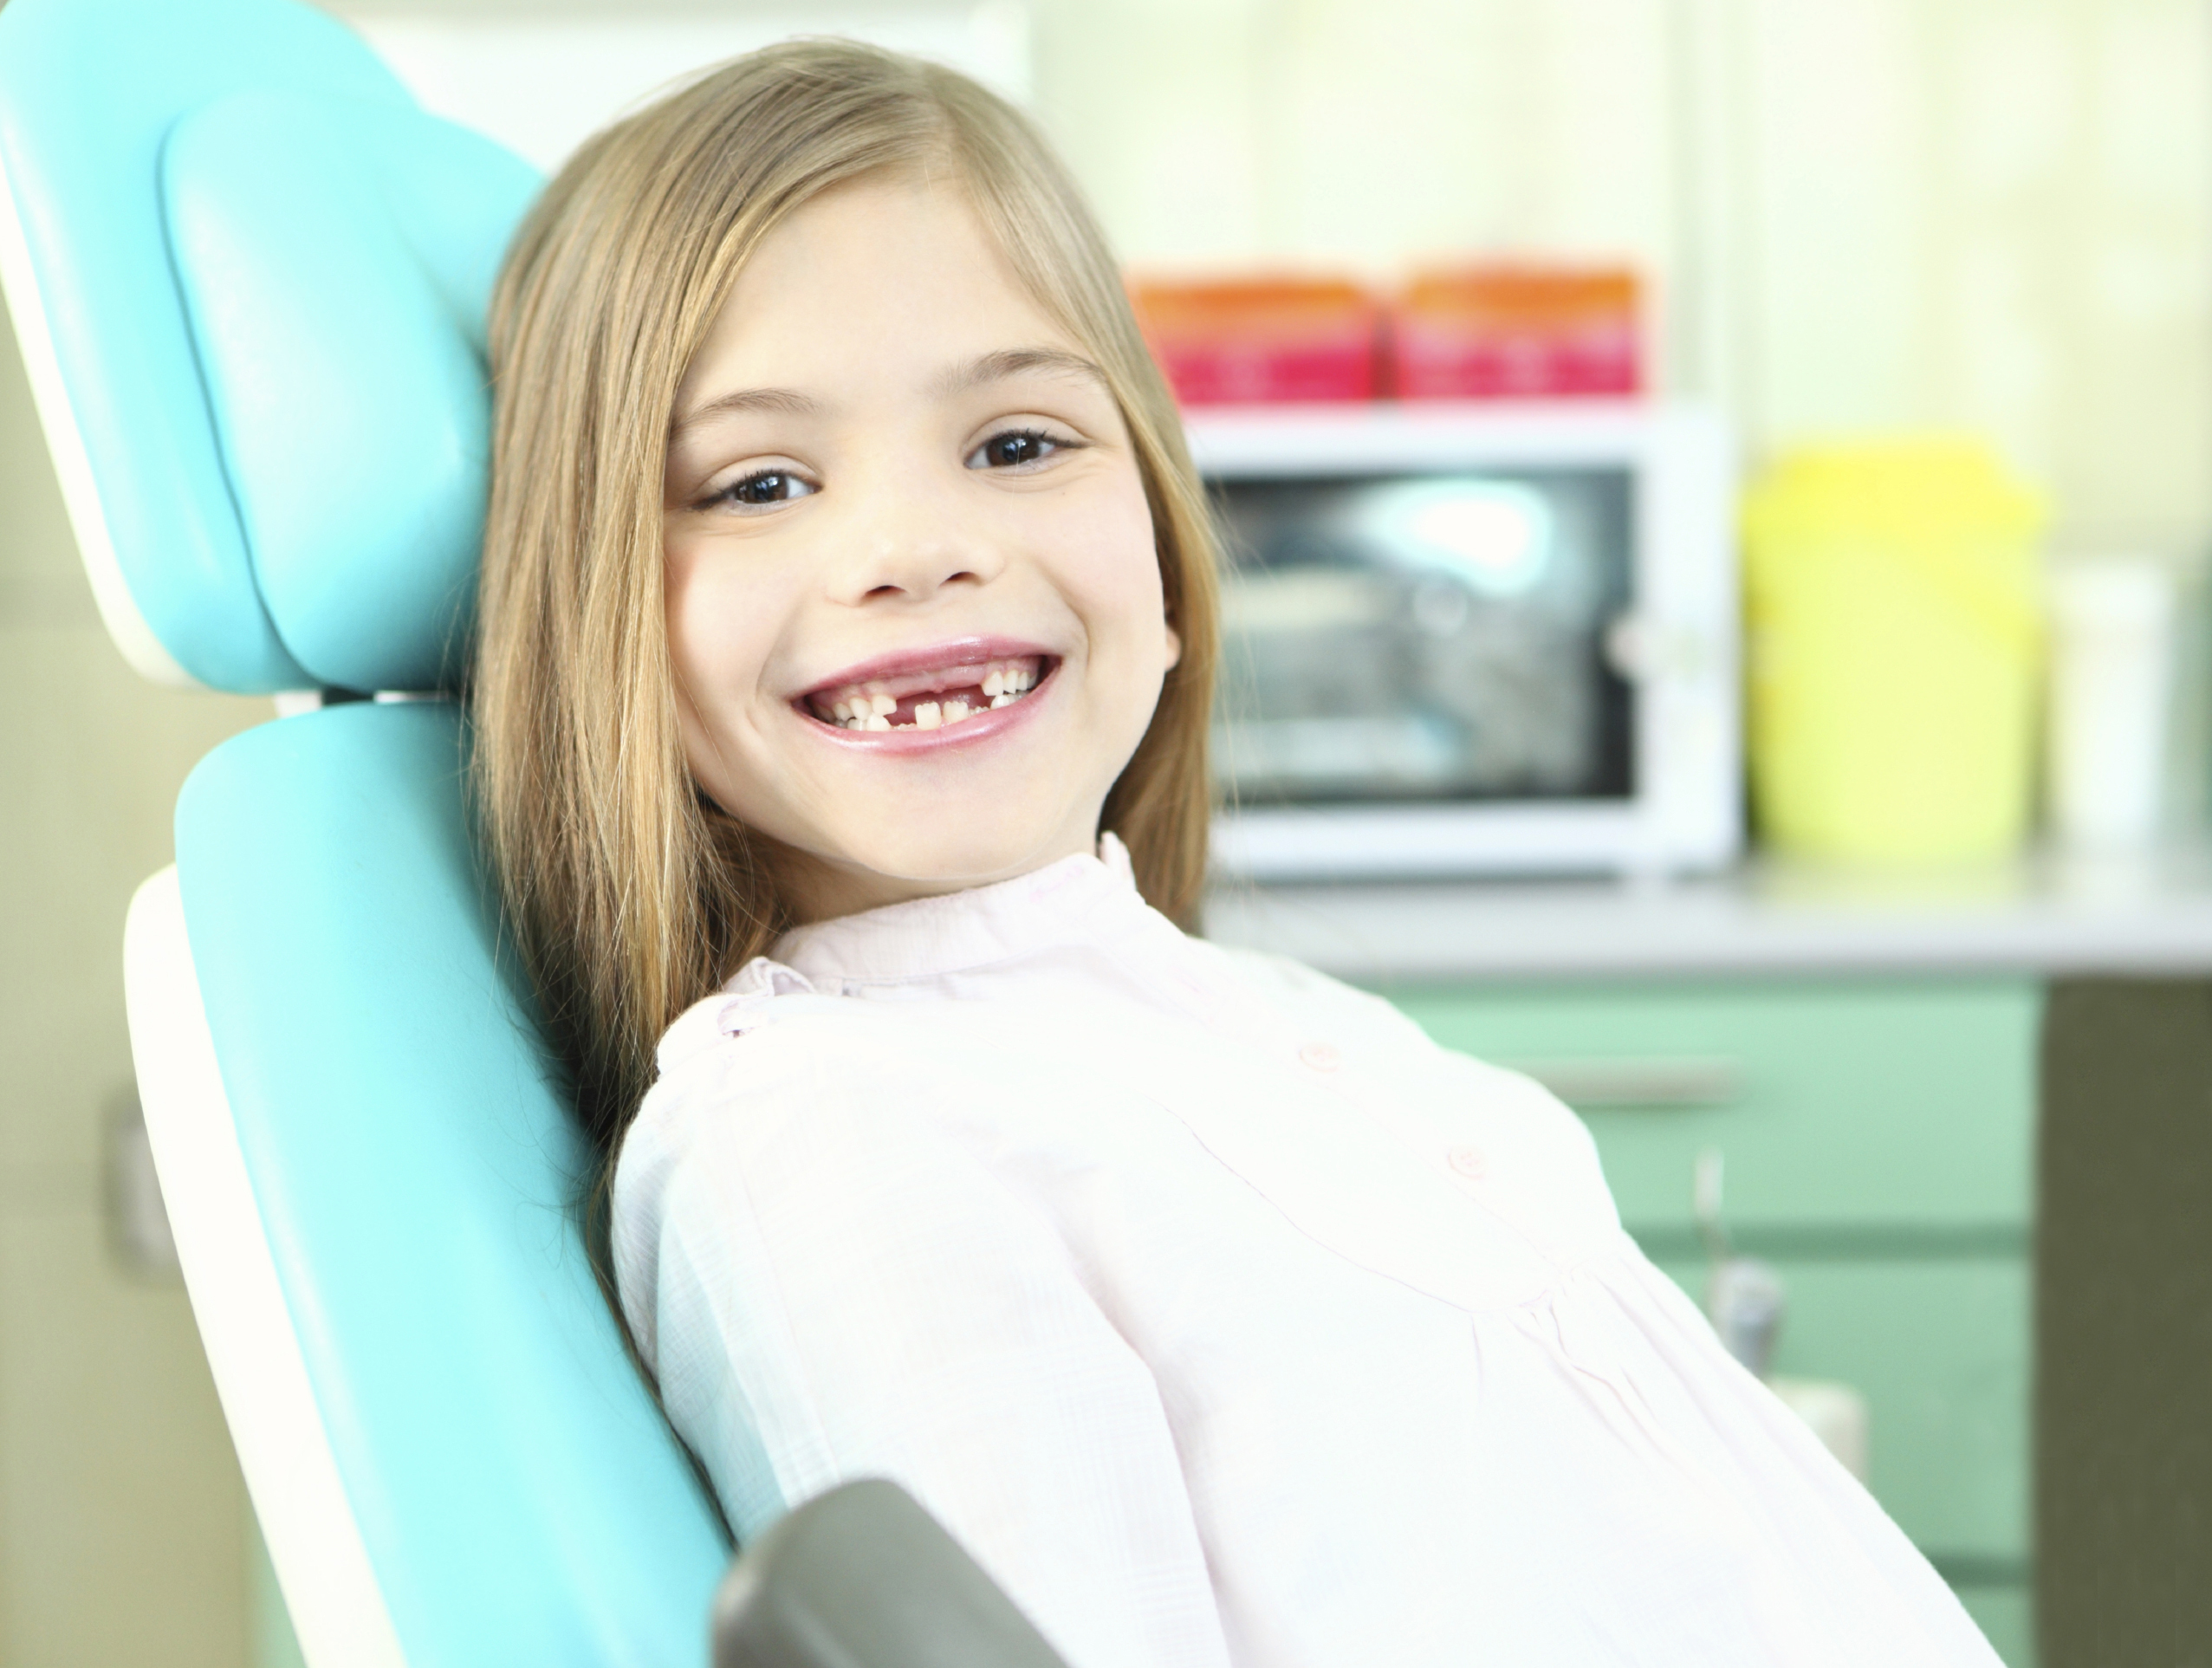 Auckland fare catch a cold Dentista Pediatrico | Studio Ortodontico Dott.ssa Silvia Bernini